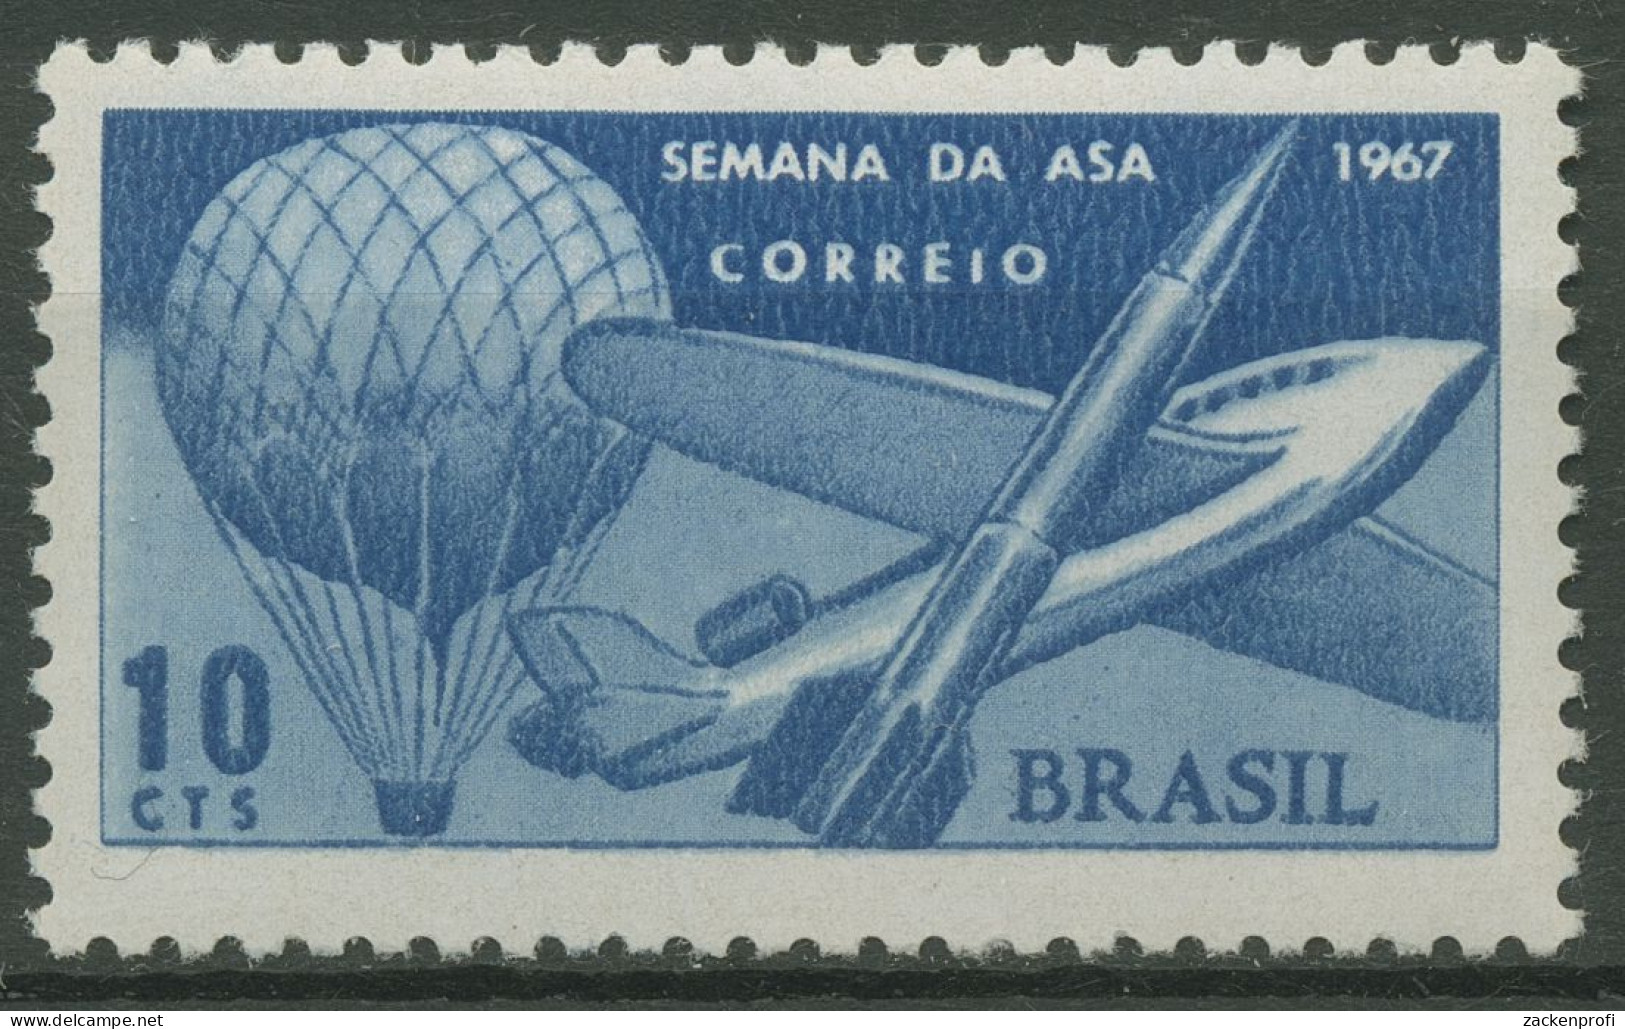 Brasilien 1967 Flugwoche Ballon Flugzeug Rakete 1151 Postfrisch - Nuevos